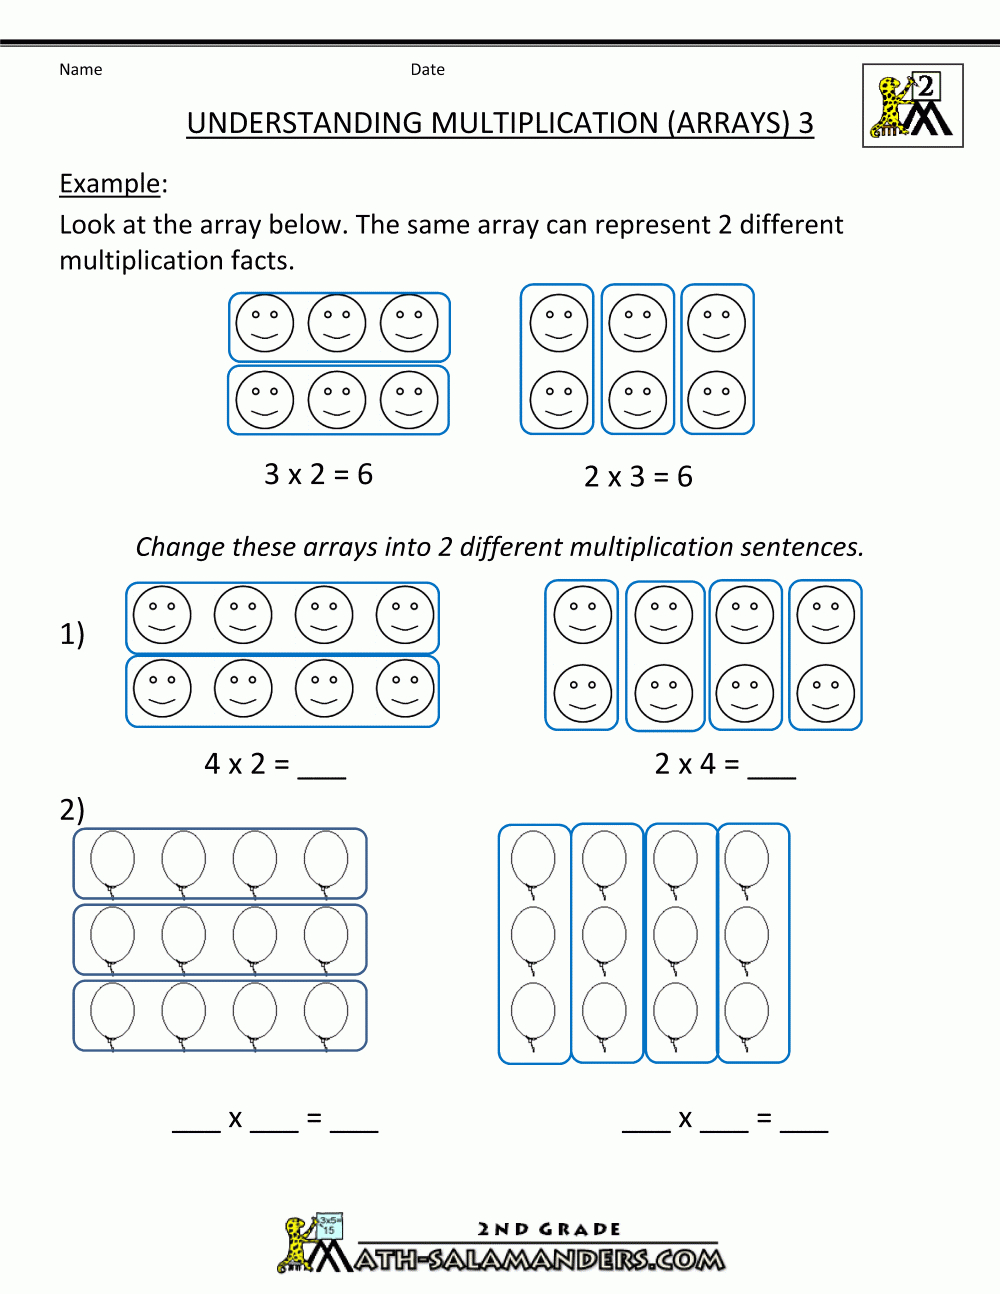 Beginning Multiplication Worksheets | Multiplication pertaining to Multiplication Worksheets Elementary